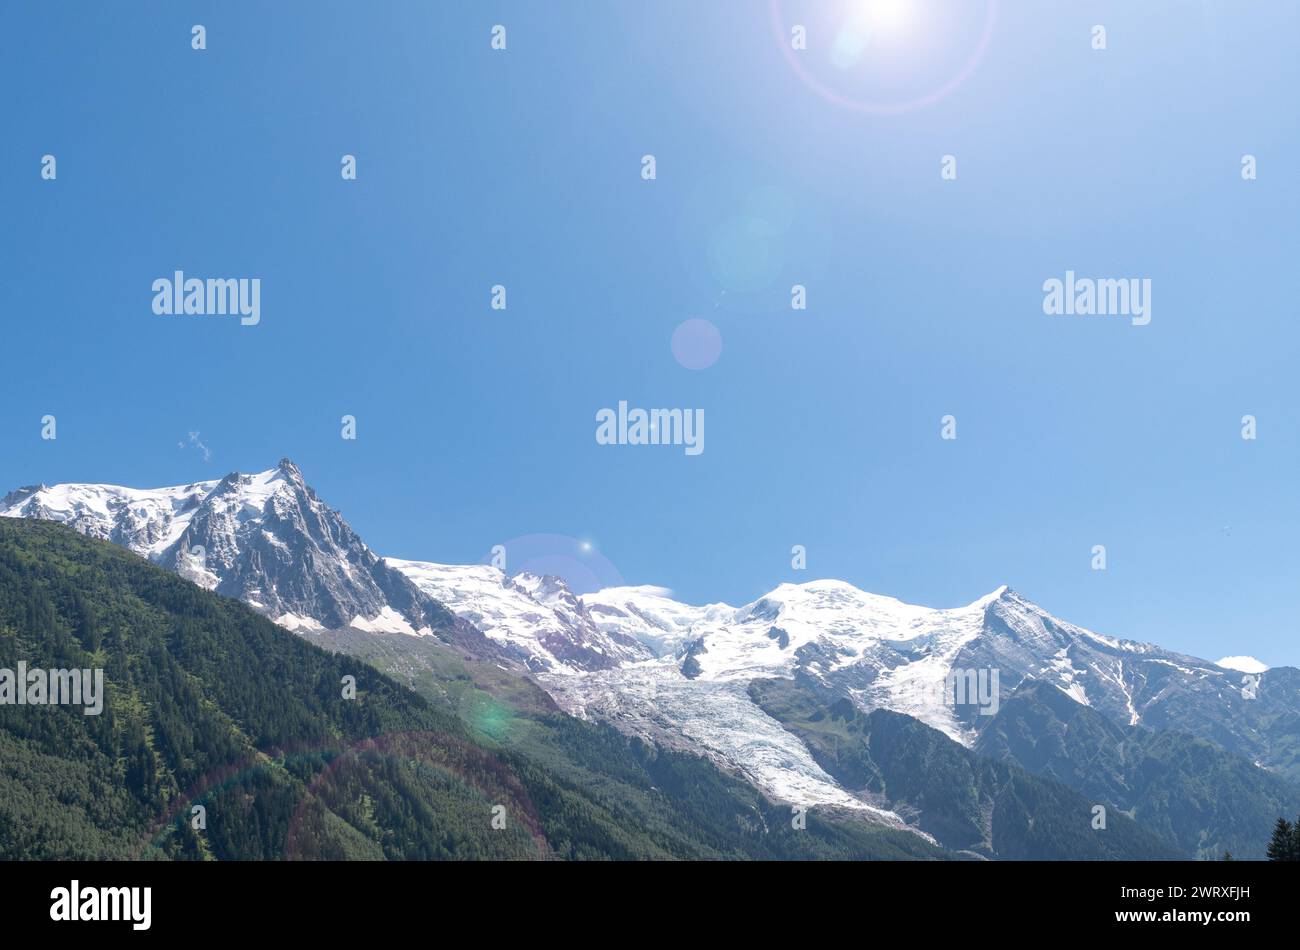 Vista retroilluminata con lenti svasate della cima del Monte bianco (4808 m), la montagna più alta delle Alpi, contro il cielo blu in estate, Chamonix, Francia Foto Stock